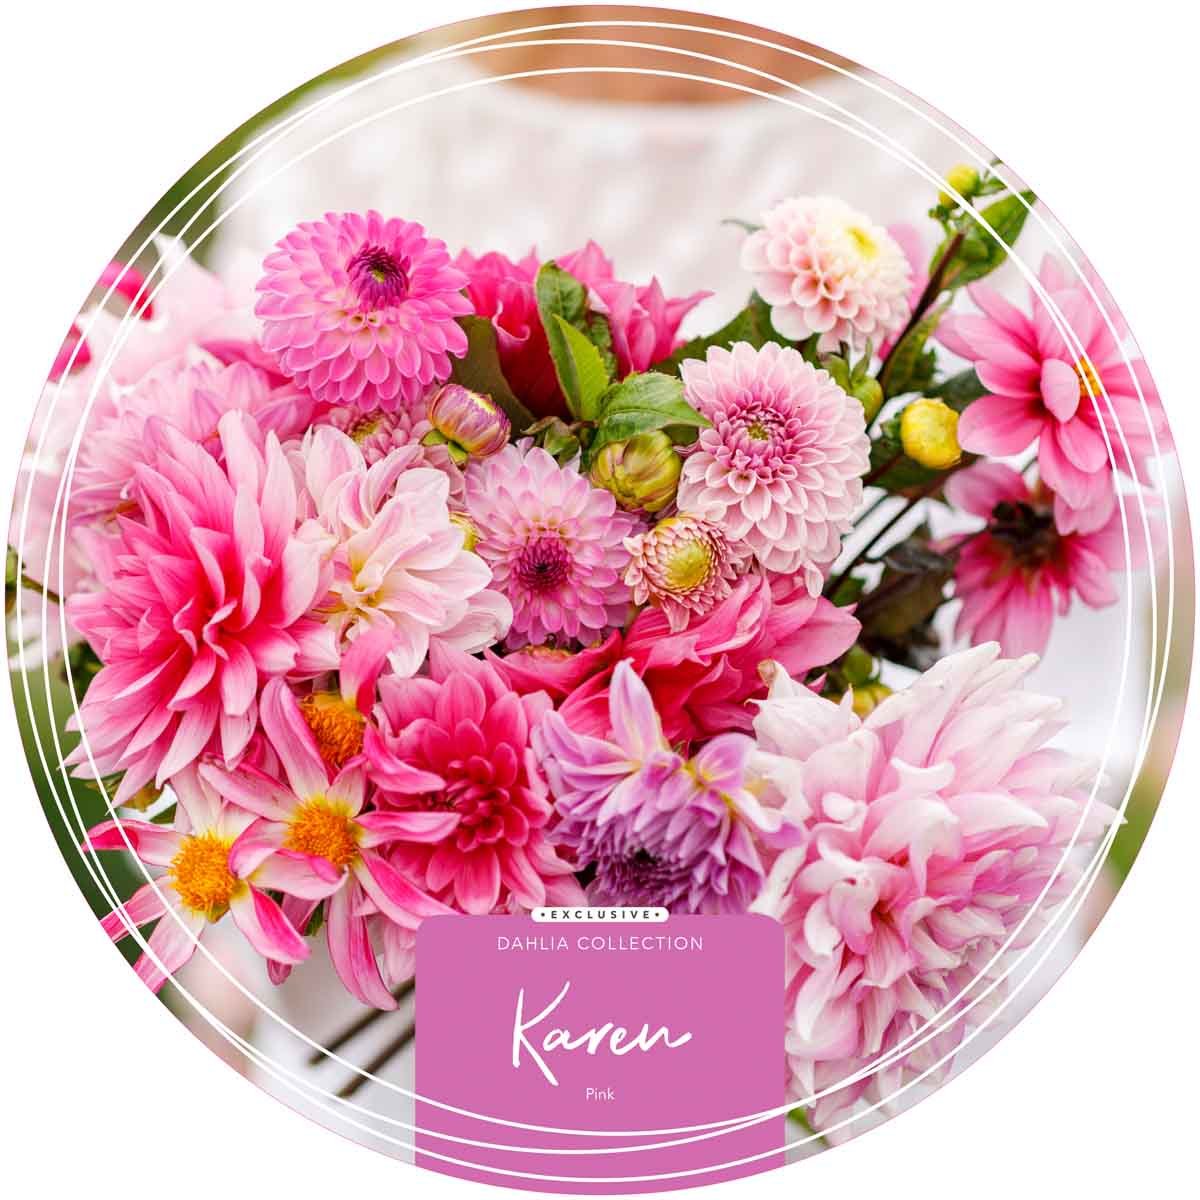 Exclusive Collection Dahlias 'Karen' - Pink